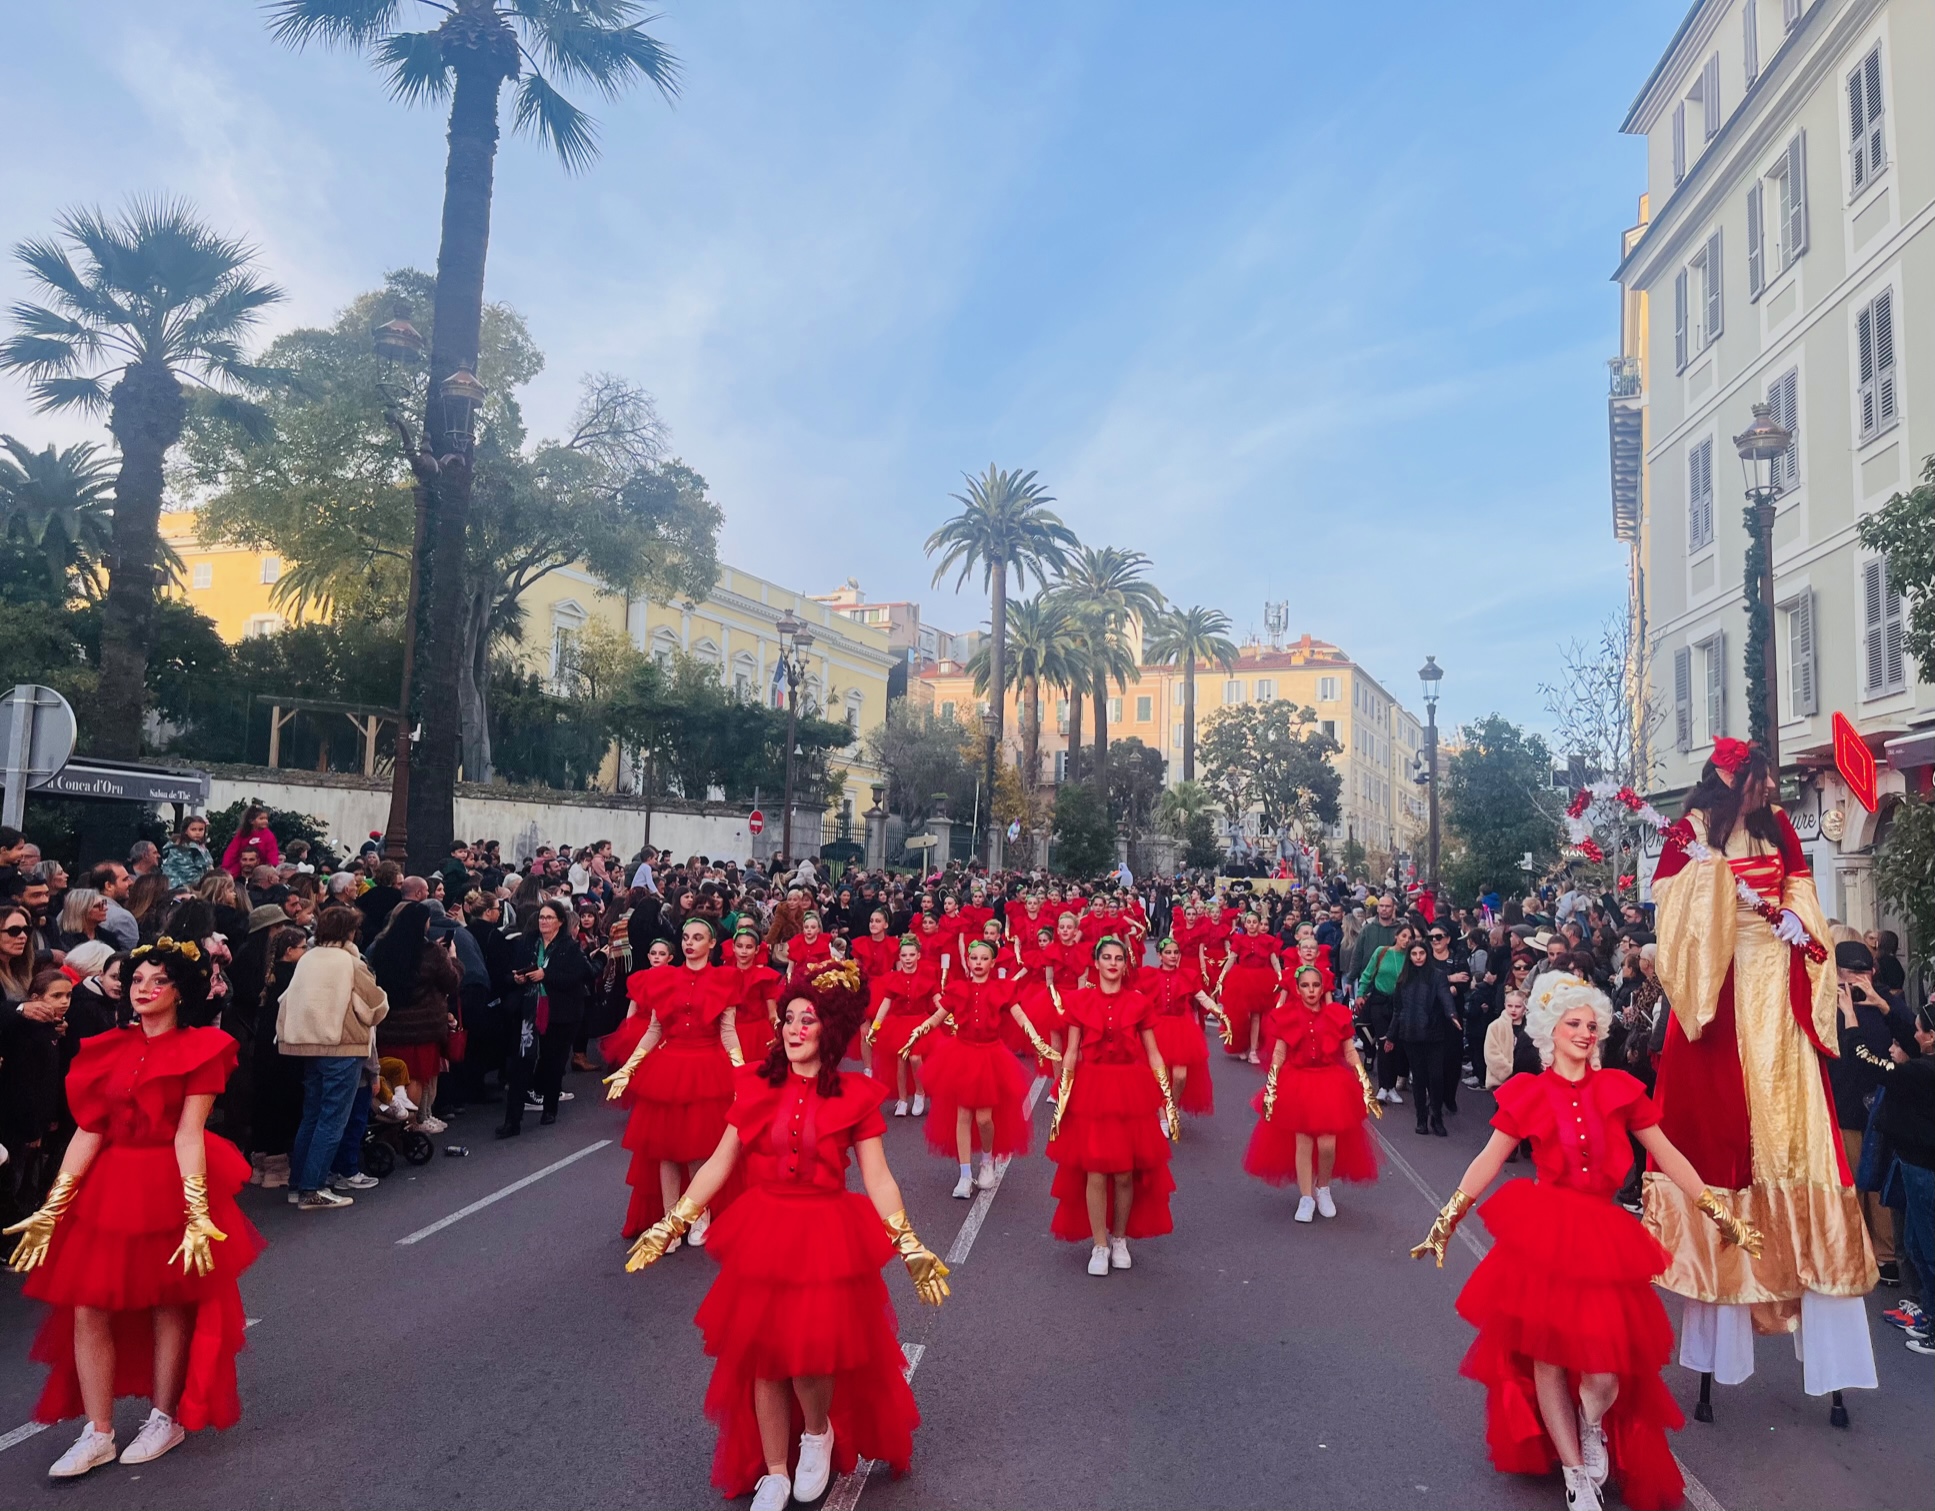 La grande parade de Noël s'est déroulée ce dimanche après-midi à Ajaccio en présence de plusieurs milliers de visiteurs.